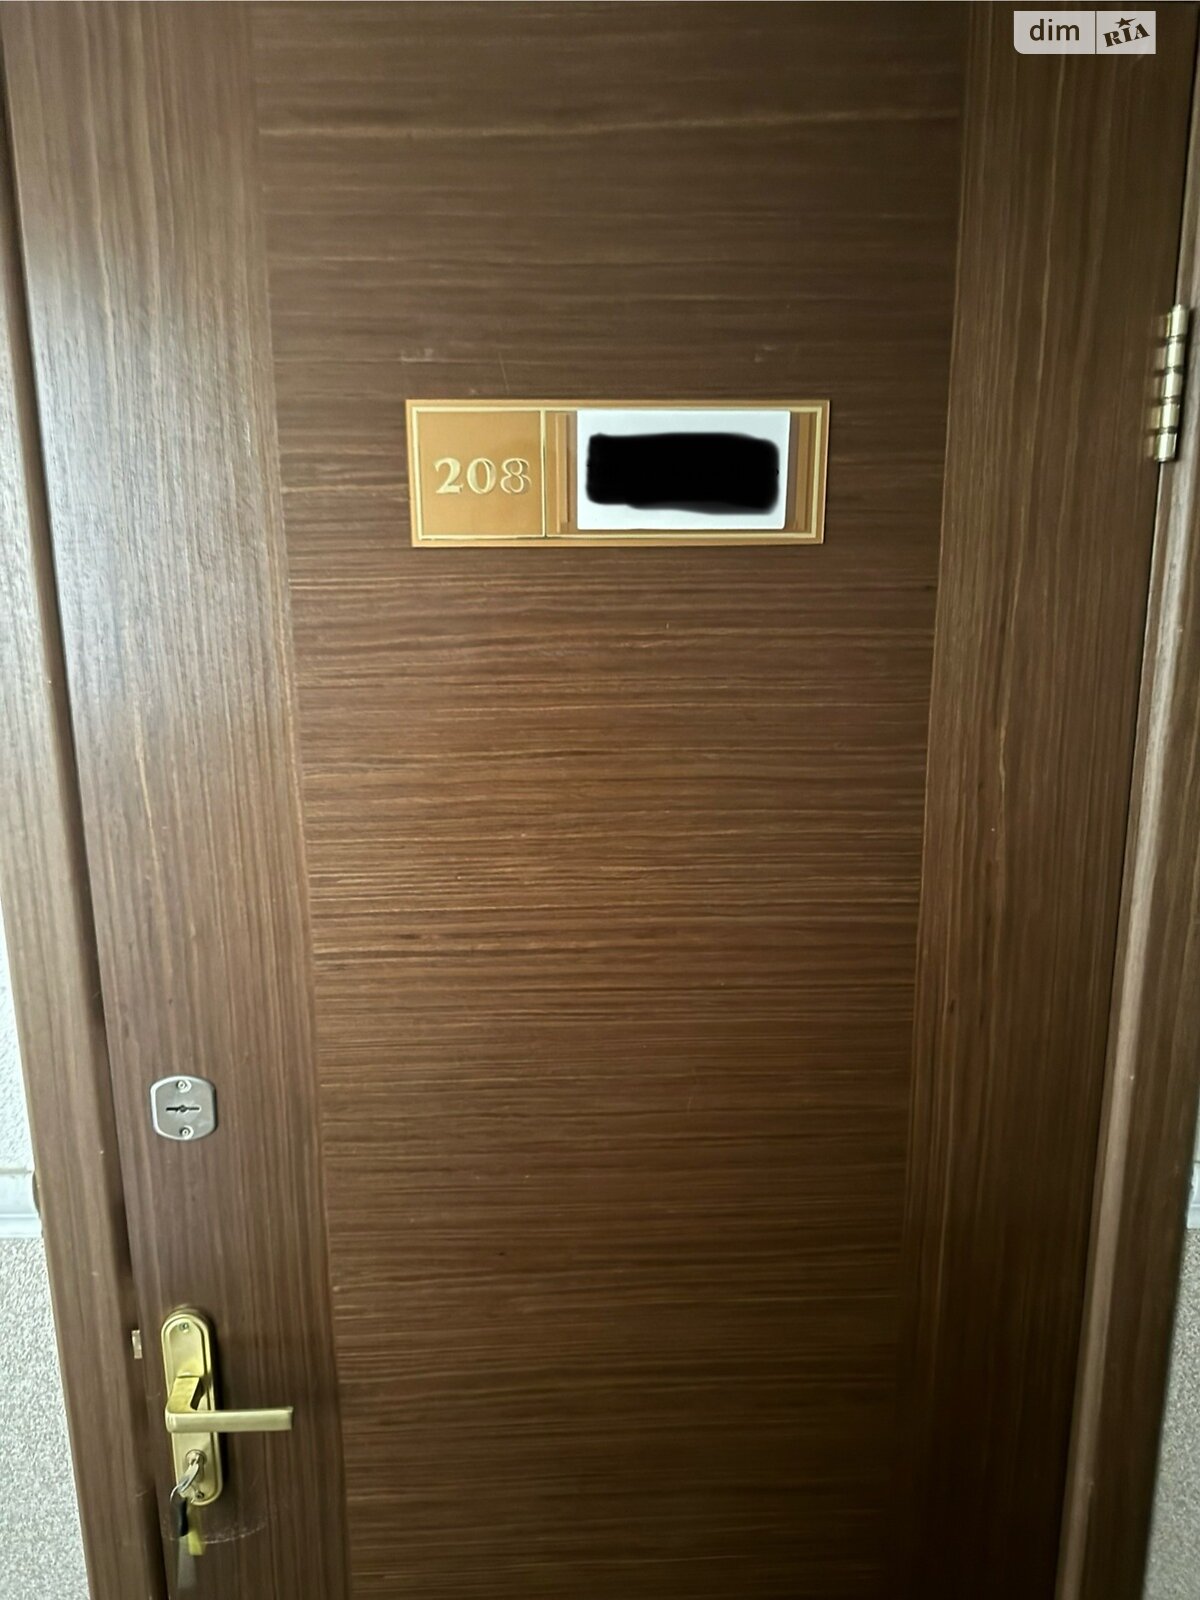 Аренда офисного помещения в Киеве, Козацкая улица 116, помещений - 1, этаж - 2 фото 1